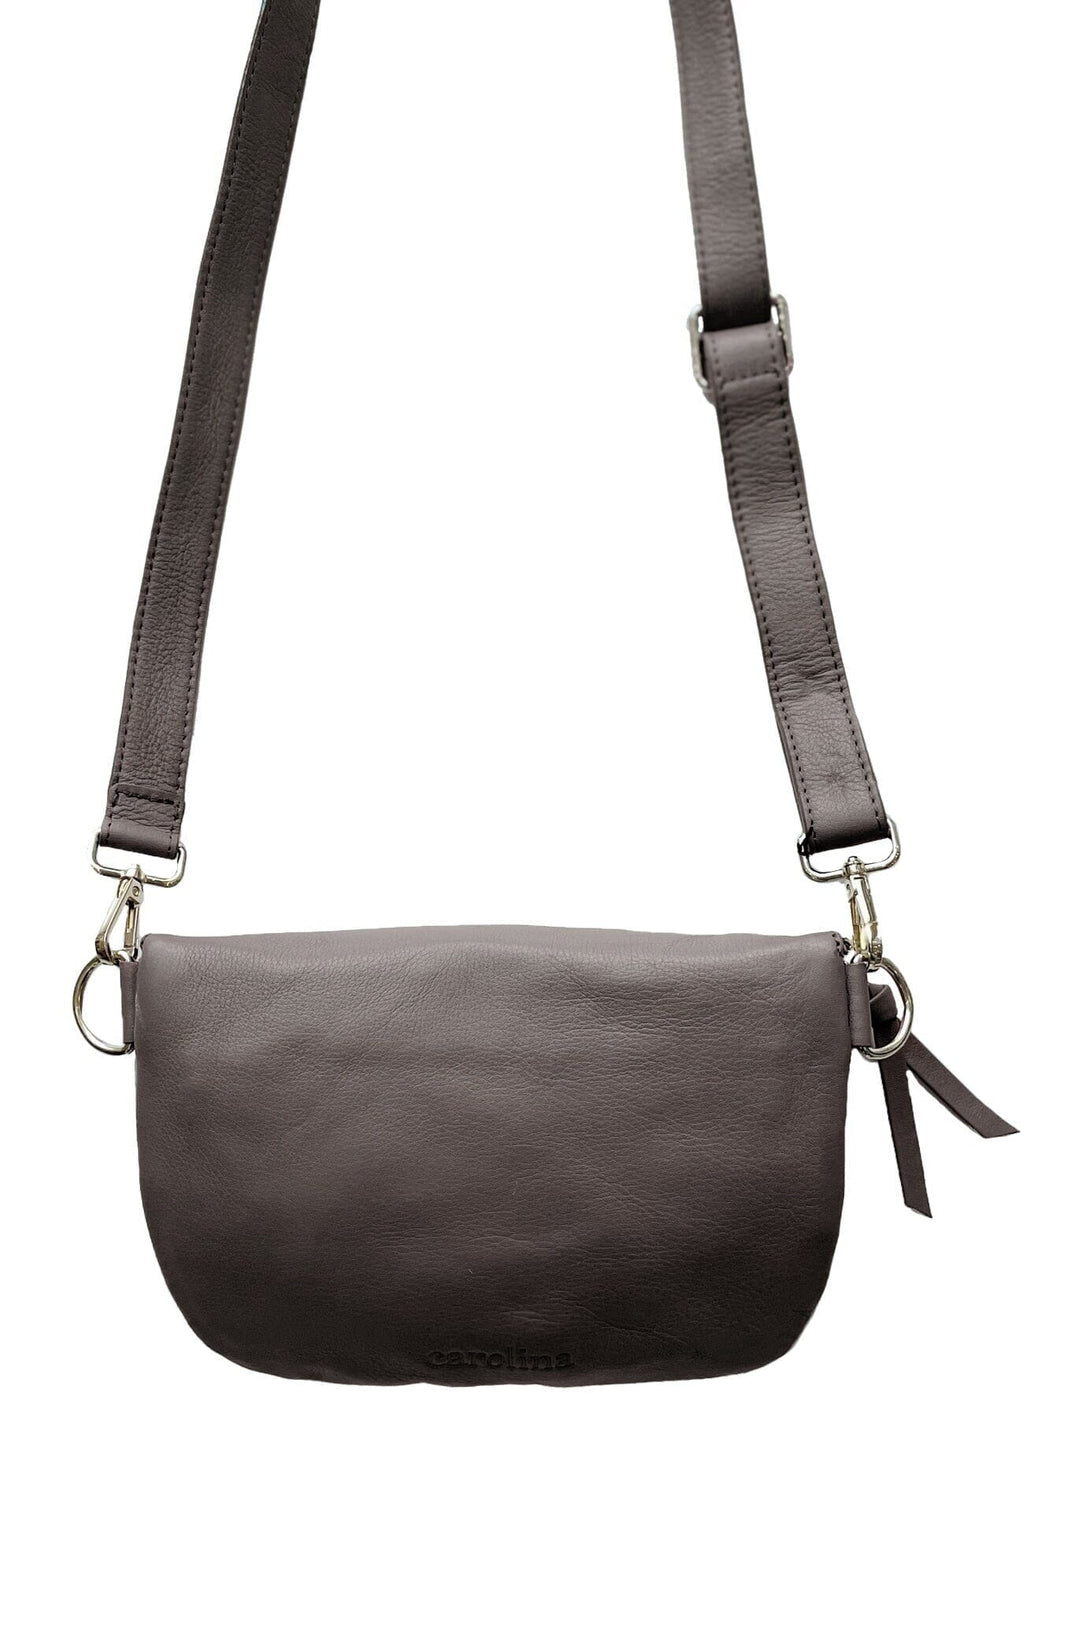 Ramona Small Leather Handbag Khaki Natural Leather